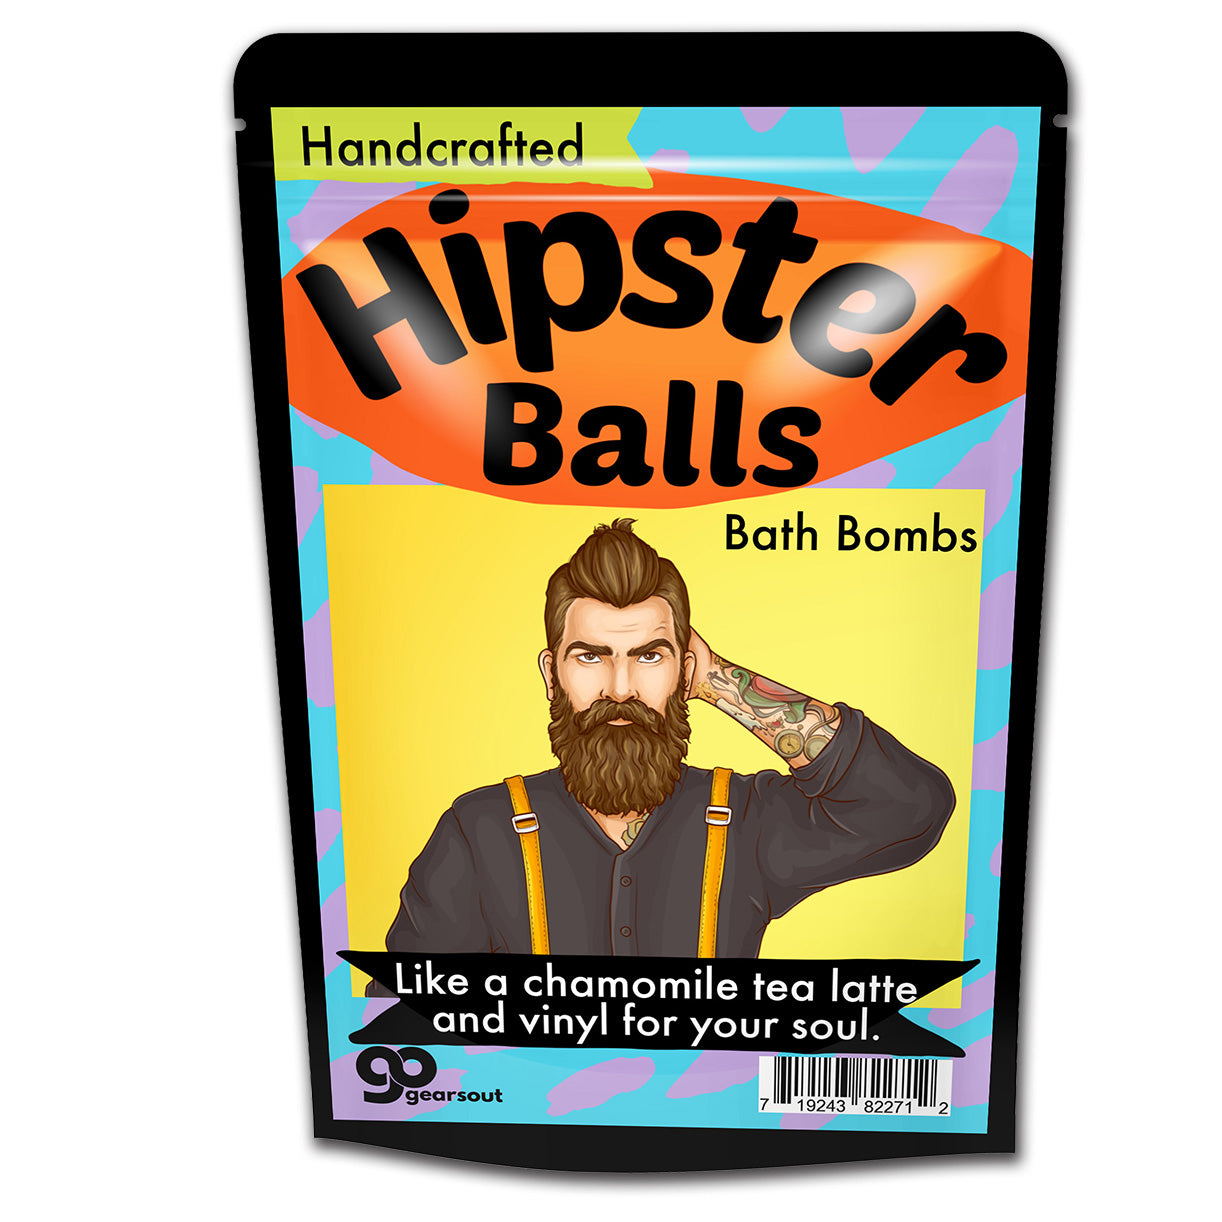 Hipster Balls Bath Bombs